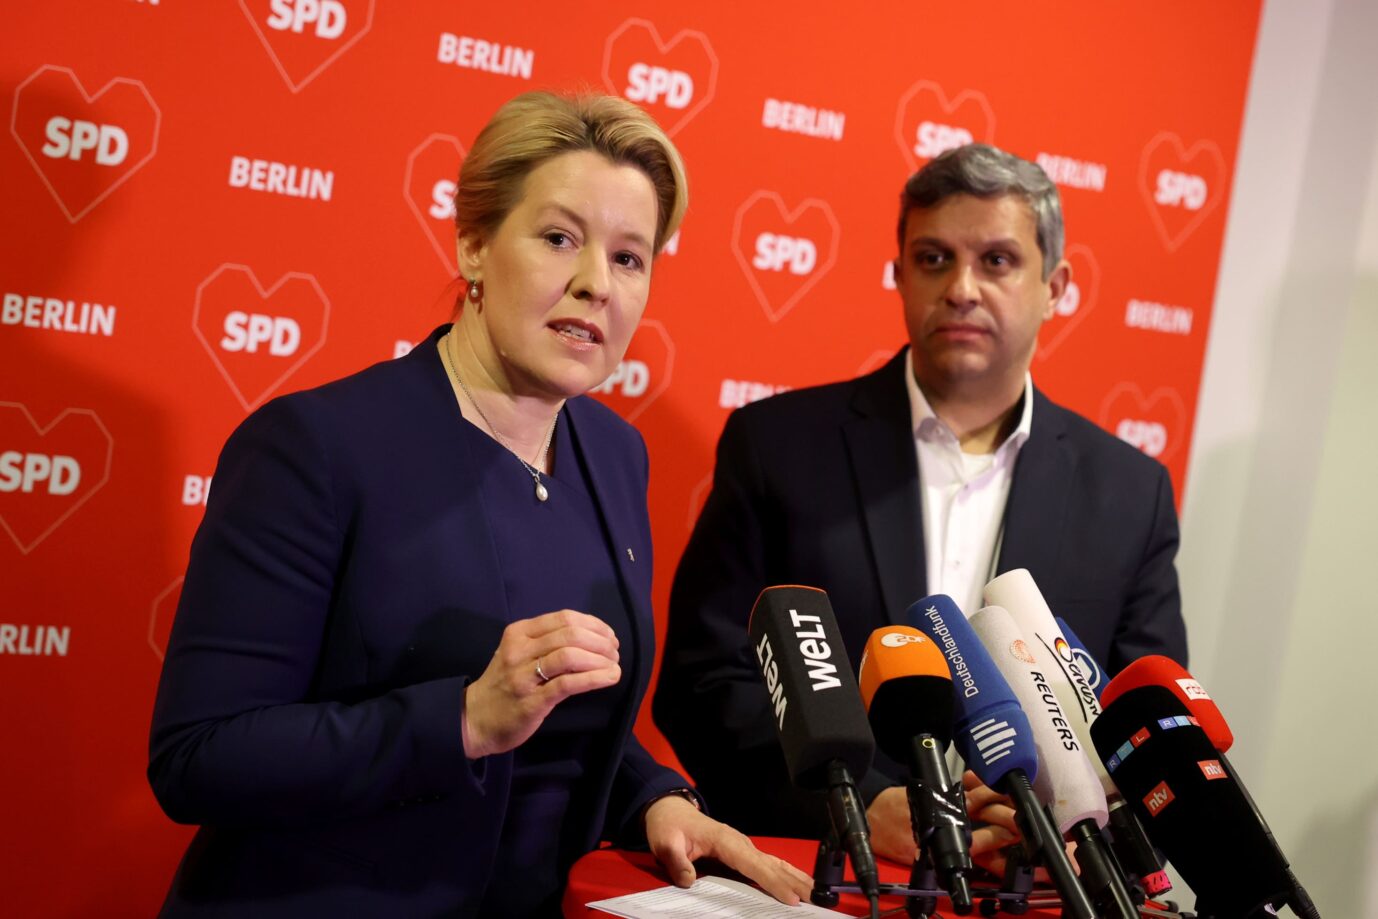 Zeitenwende in Berlin. Die Regierende Bürgermeisterin Franziska Giffey (SPD) und SPD-Landeschef Raed Saleh erklären Rot-Grün-Rot am Mittwochabend für beendet.